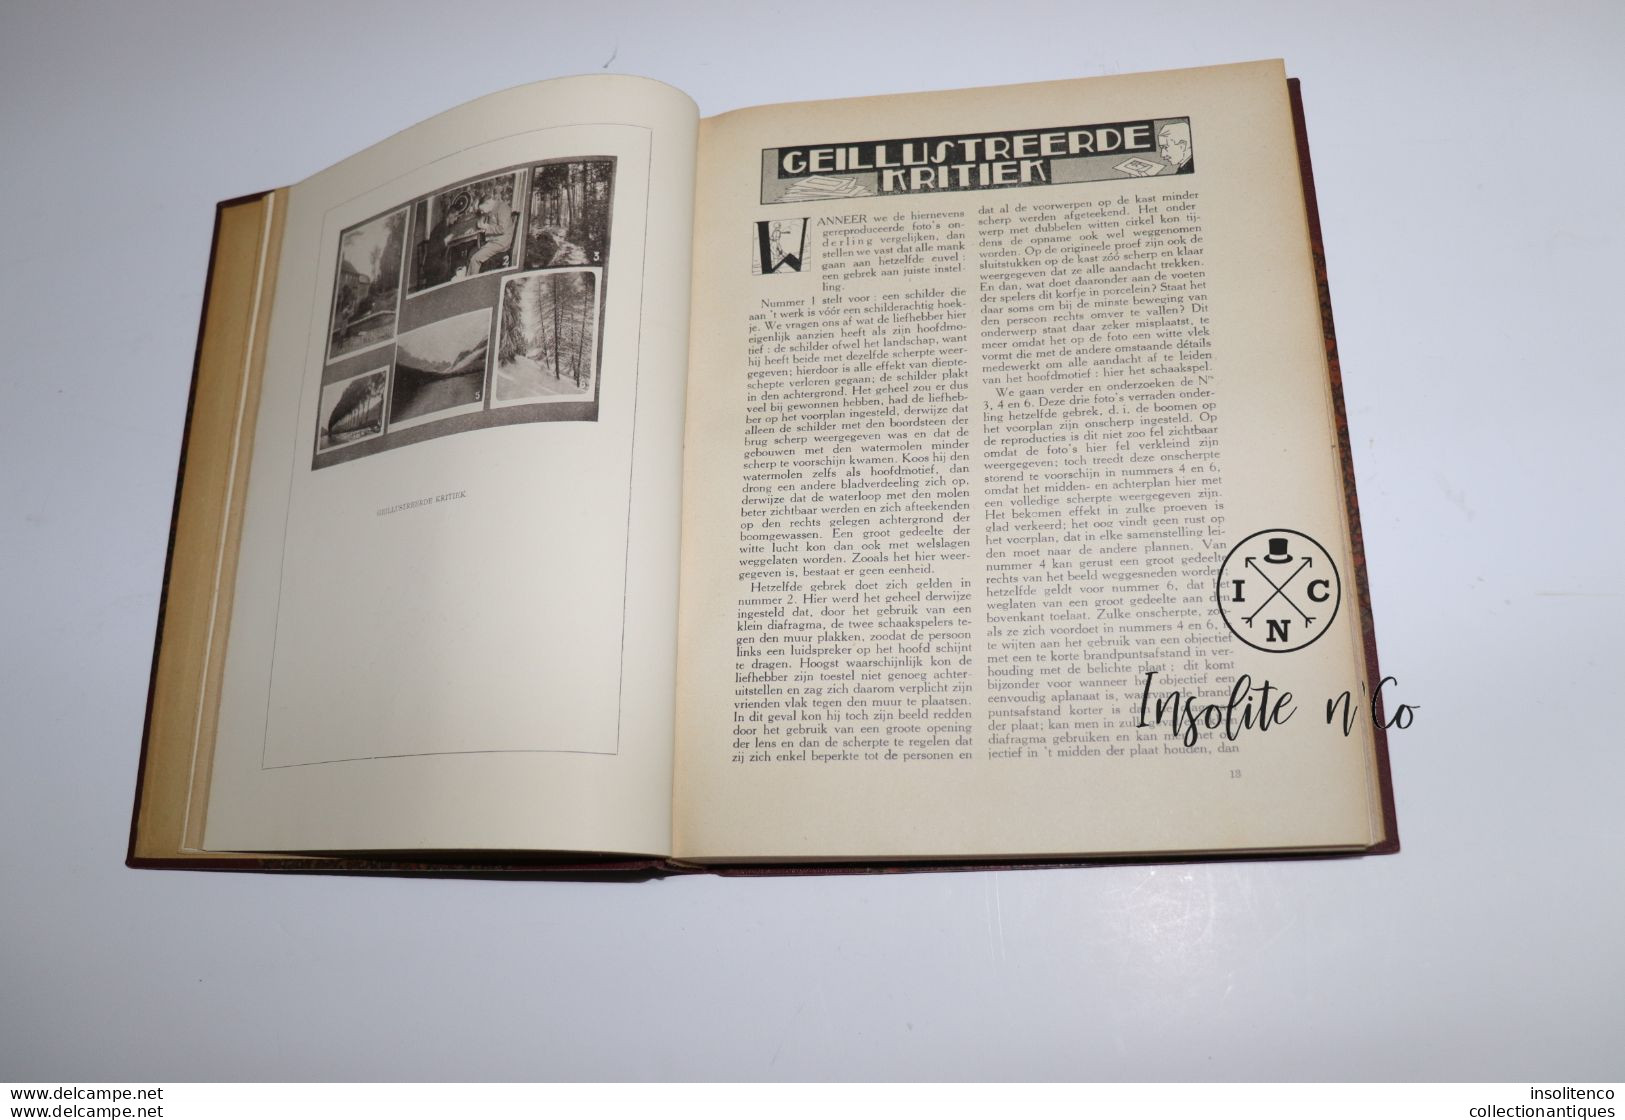 Fotokunst geillustreerd maandblad voor wetenschappelijke - en kunstfotografie 1928 -1930 - 1932 - 2 delen